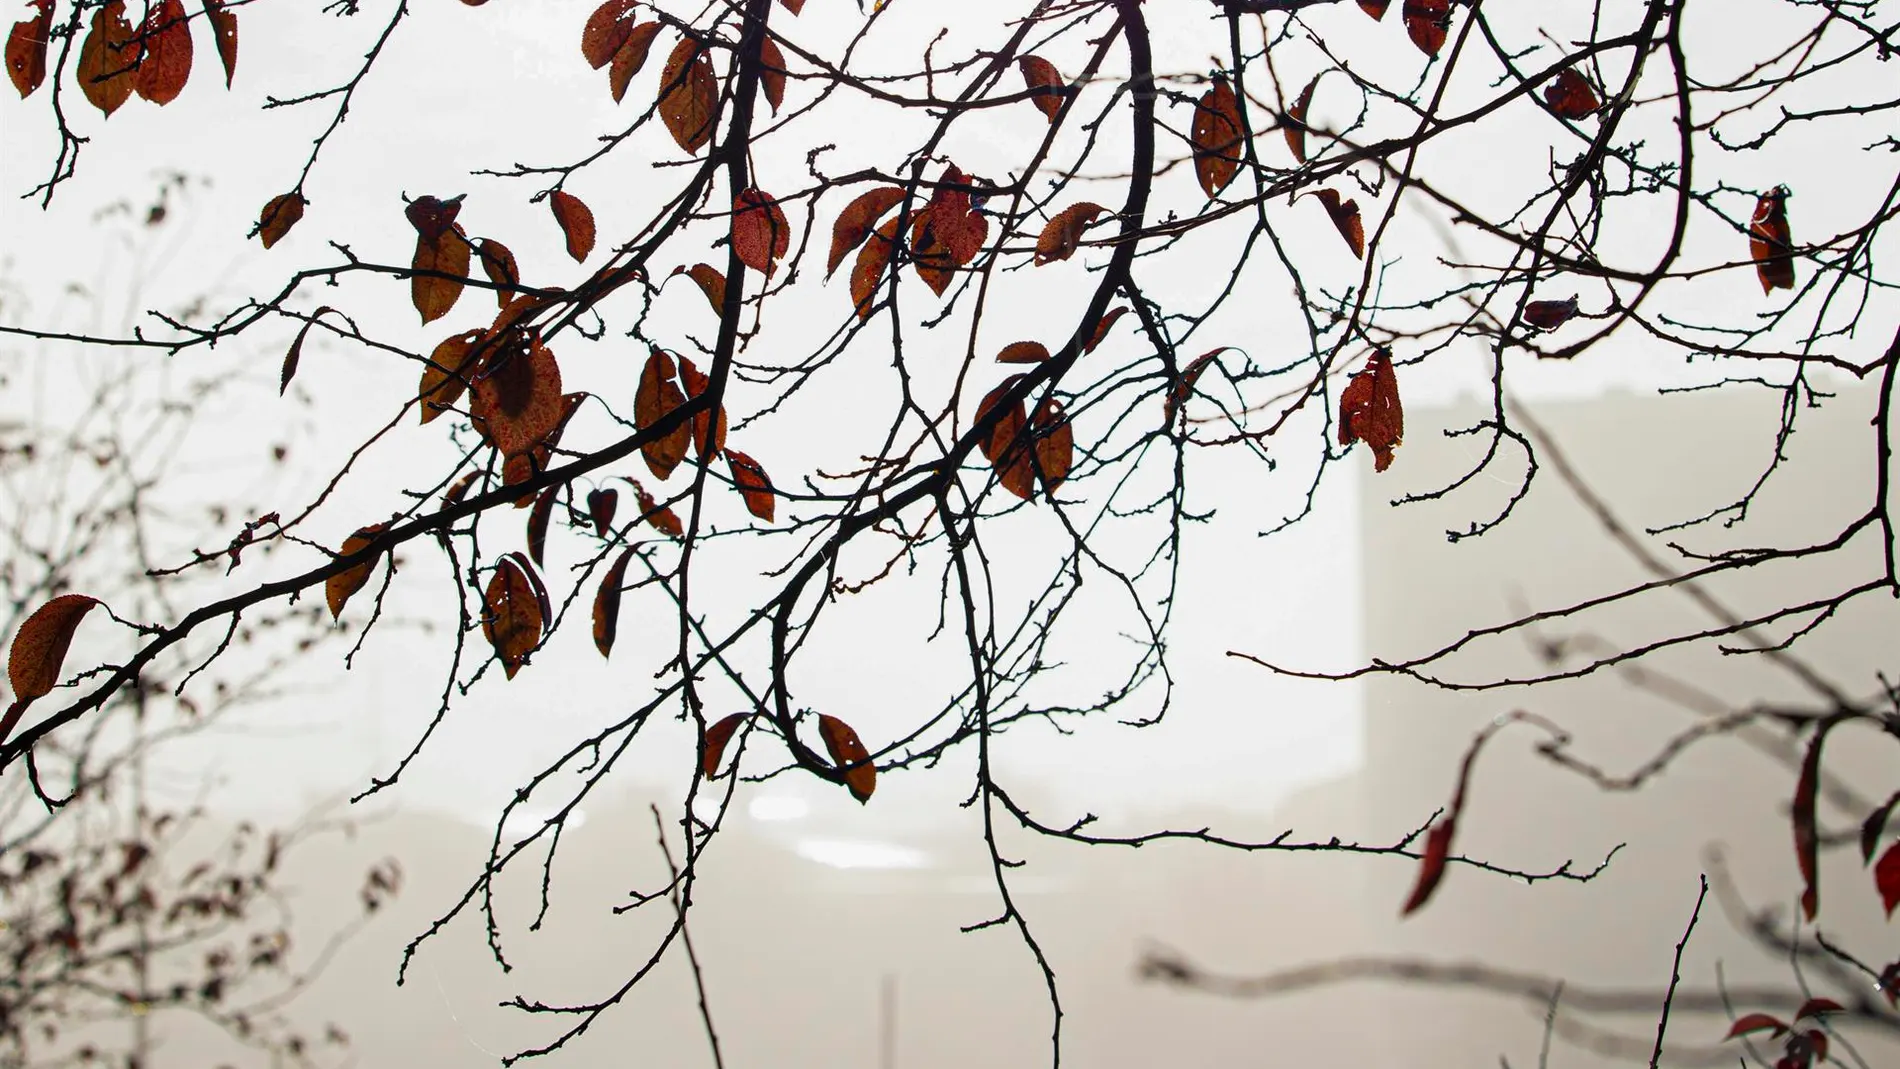 Detalle del escaso follaje de un árbol en un parque de Logroño